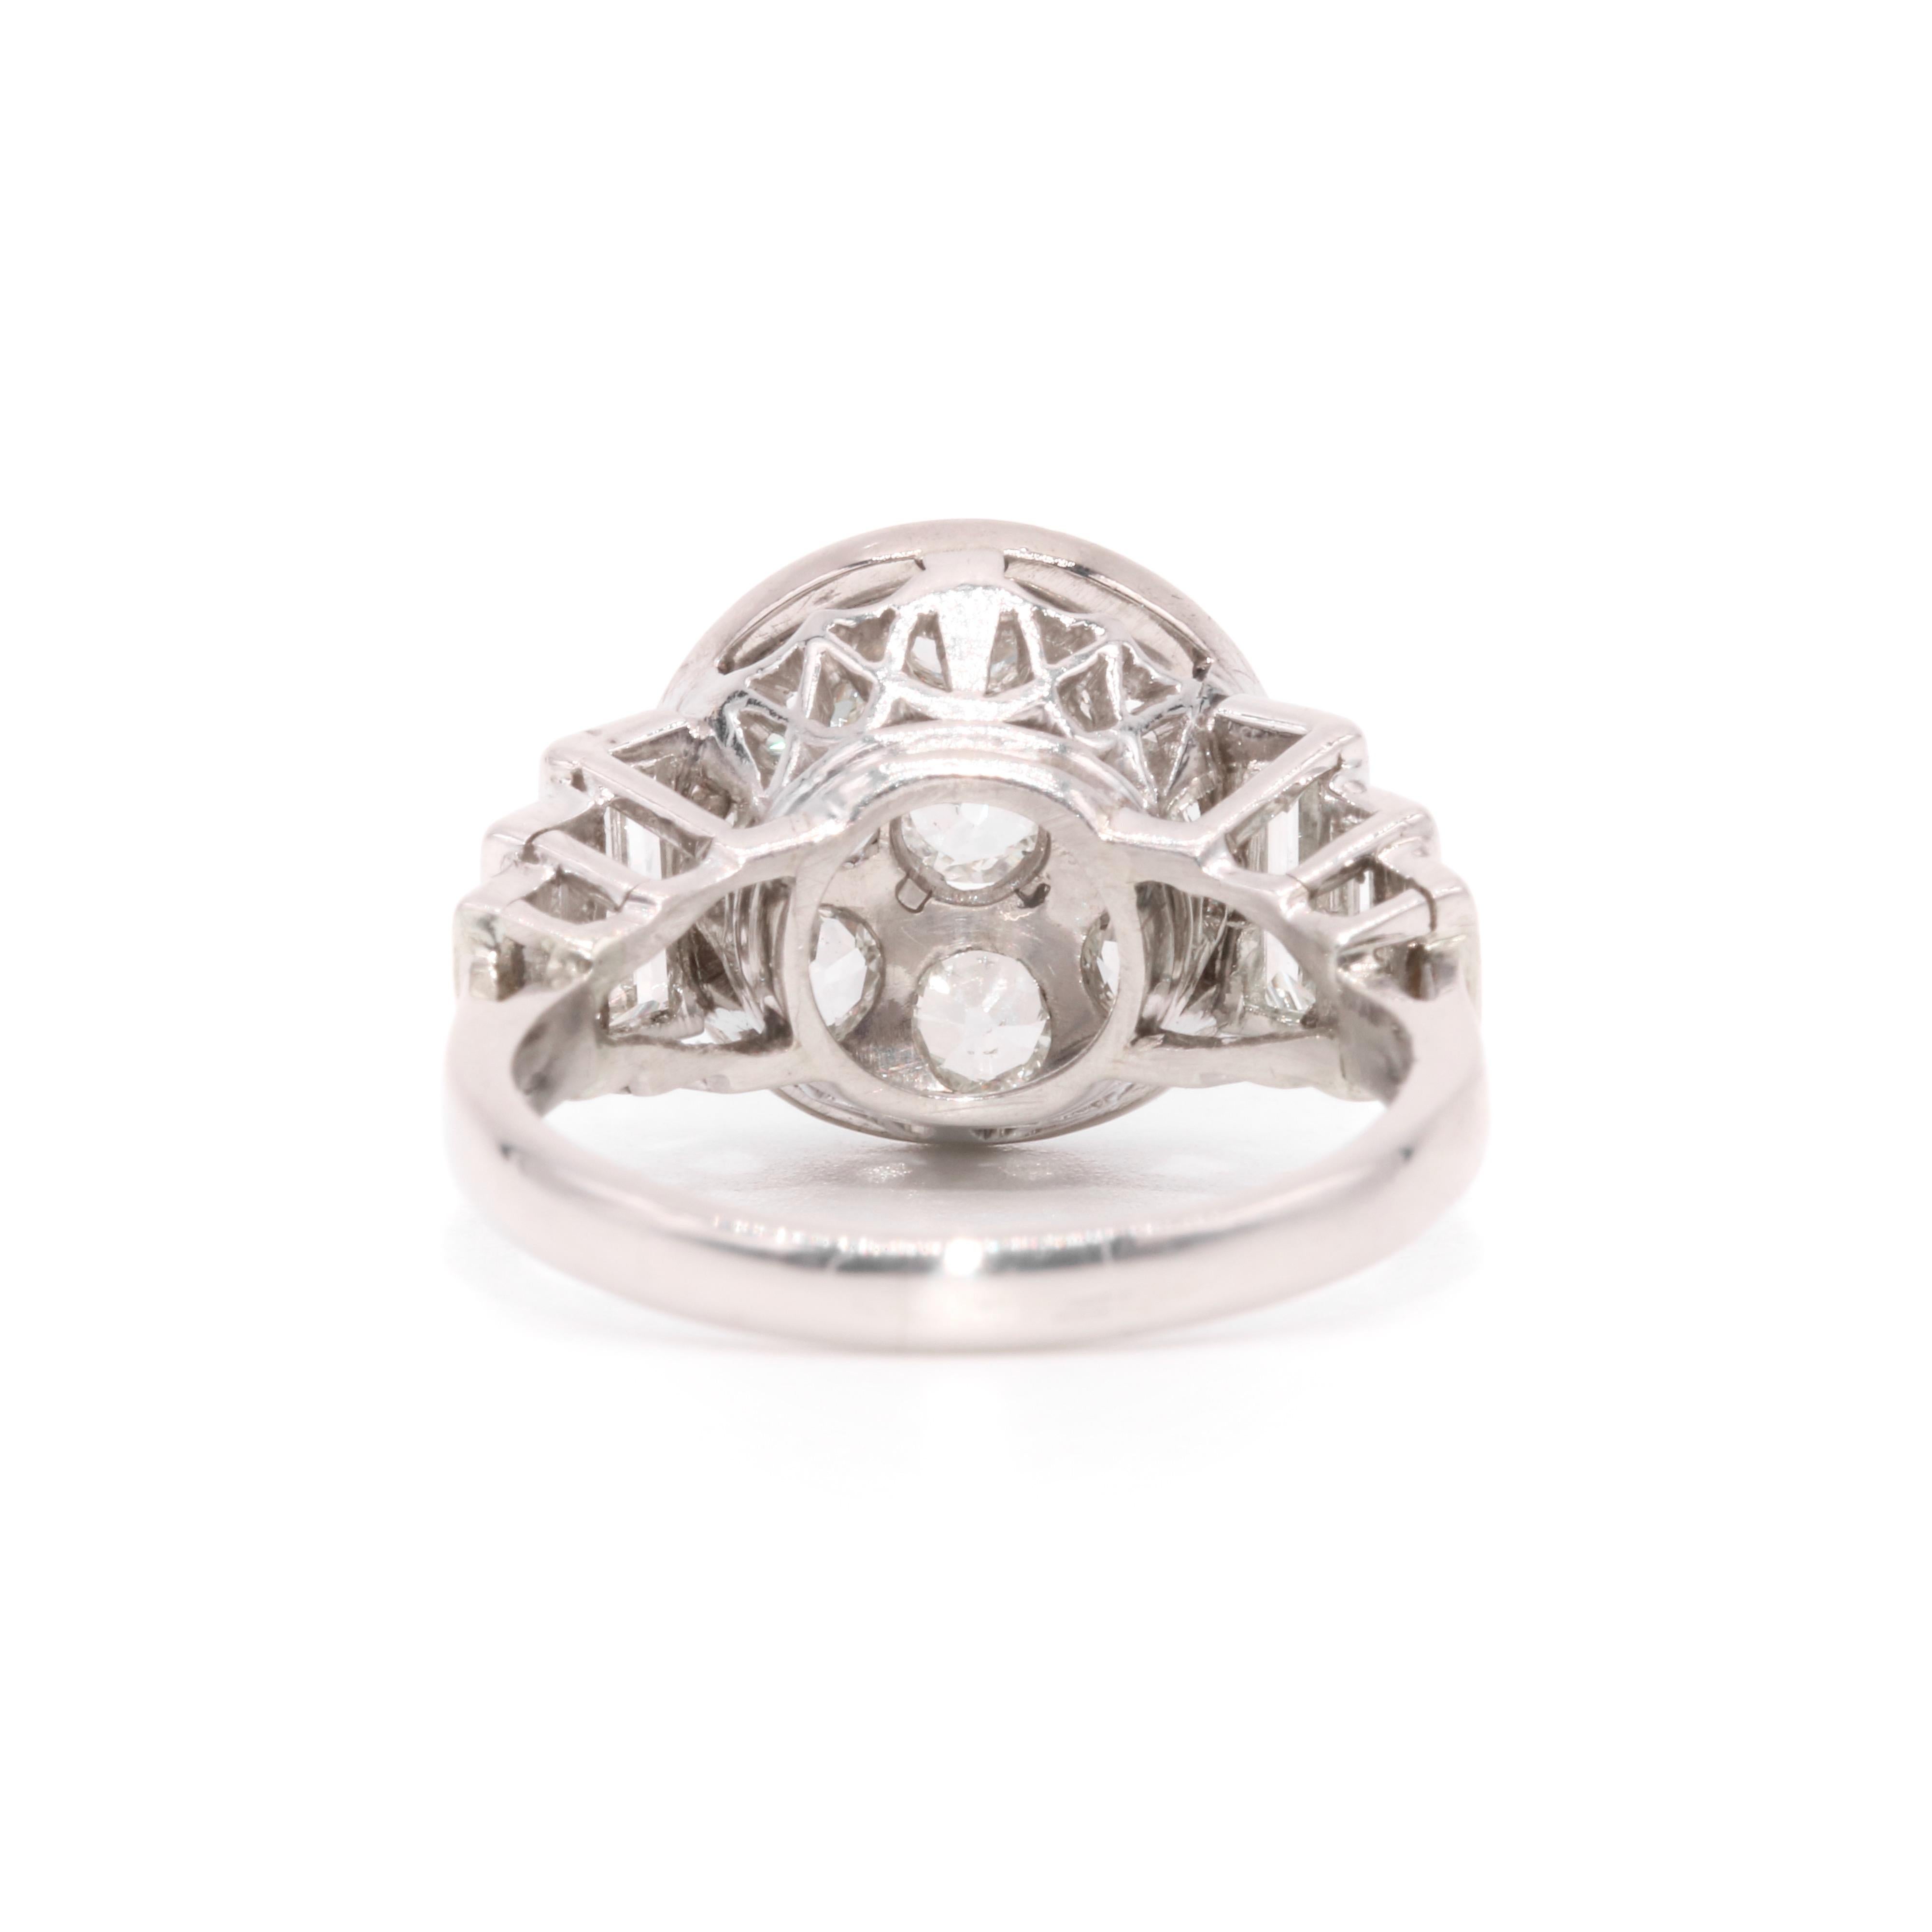 Art Deco 1930s Platinum 2.44ctw Old Cut Diamond Ring with Baguette Cut Shoulders For Sale 3